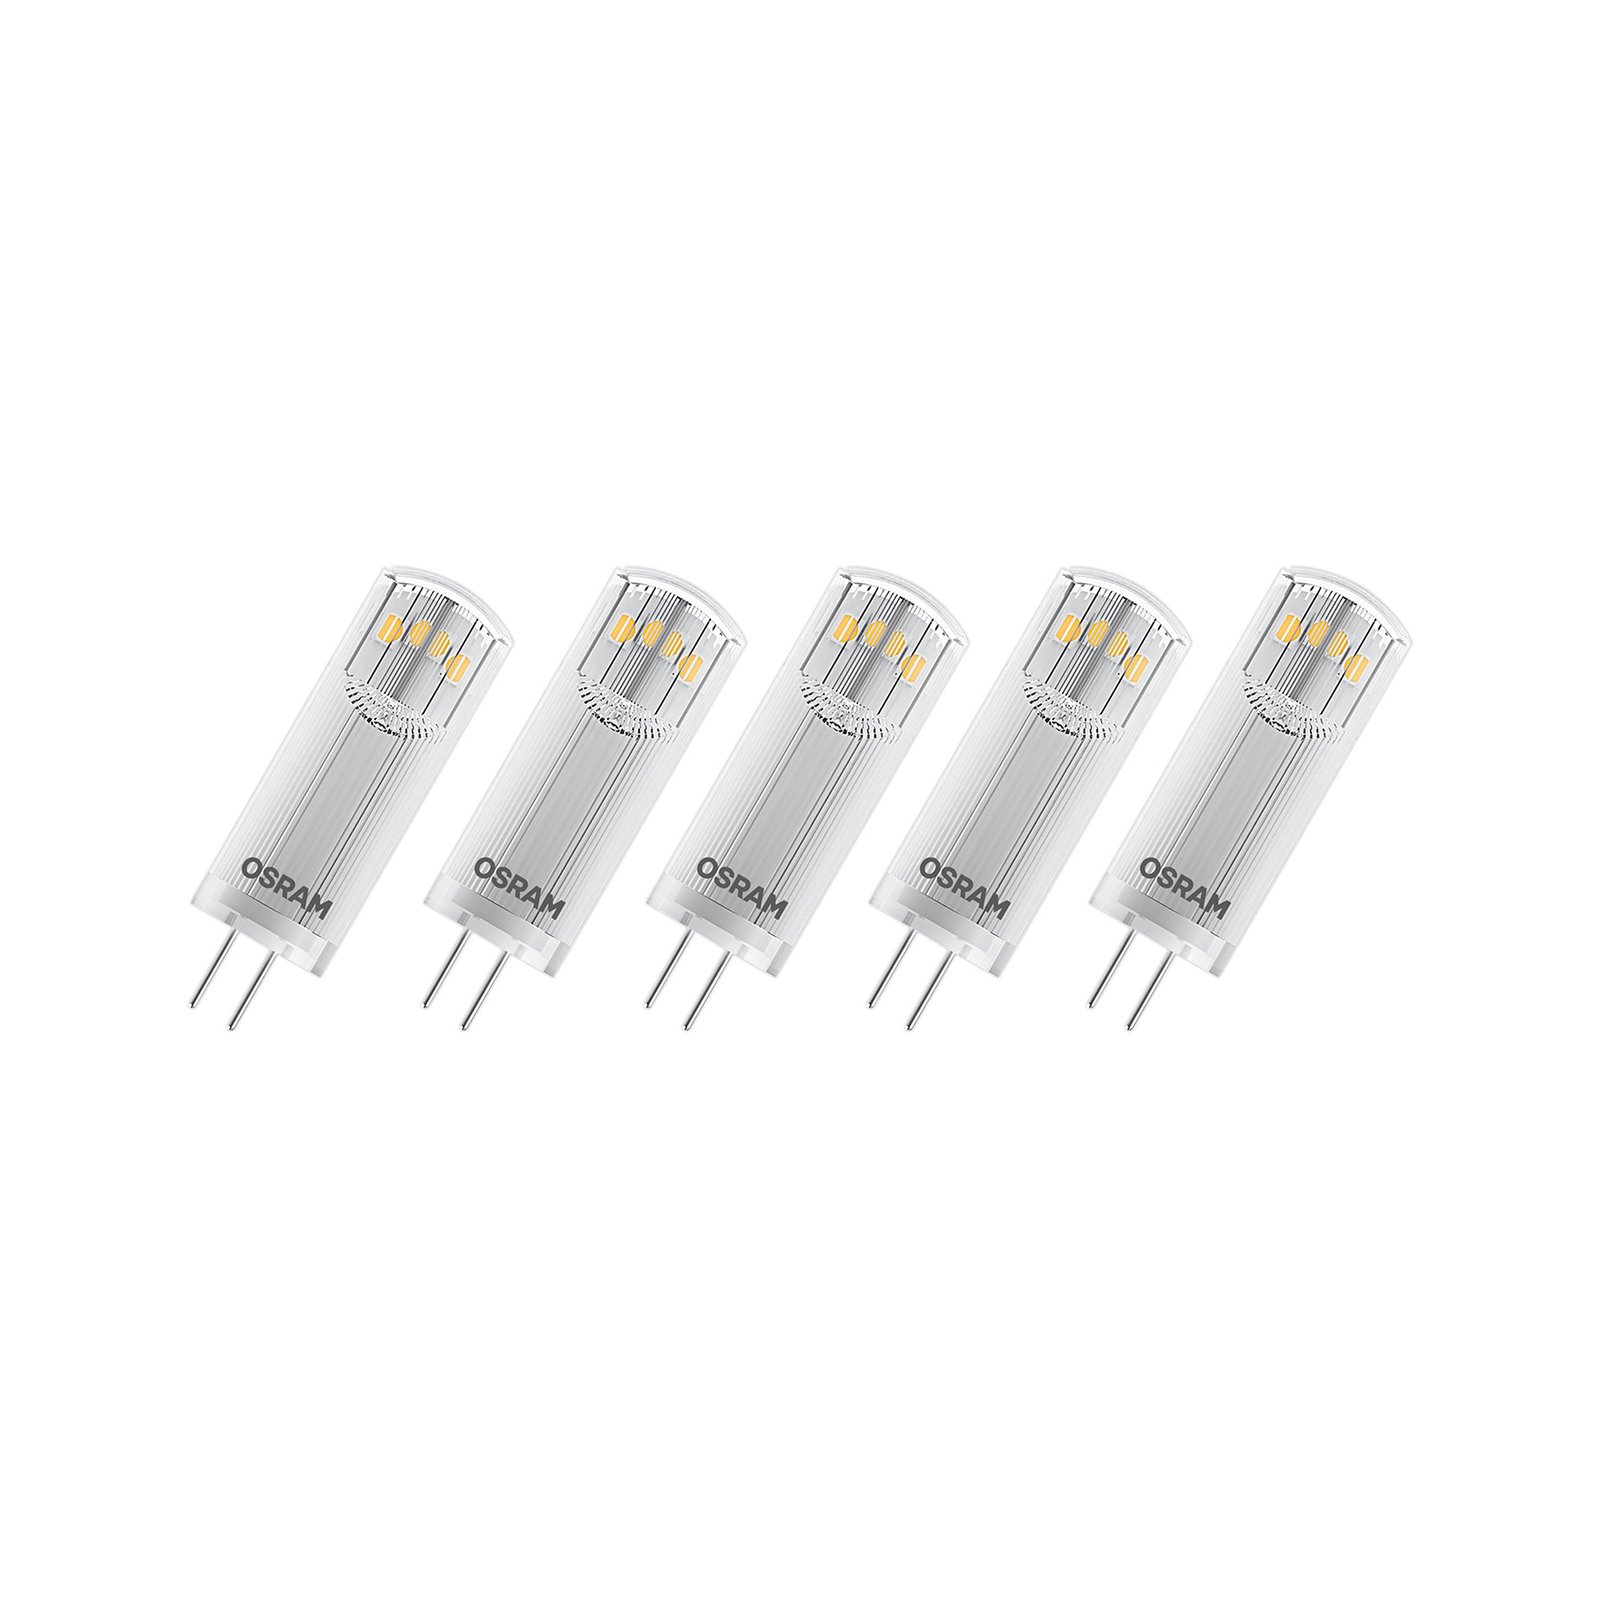 OSRAM Base PIN LED-stiftlampa G4 1,8 W 200lm 5-set